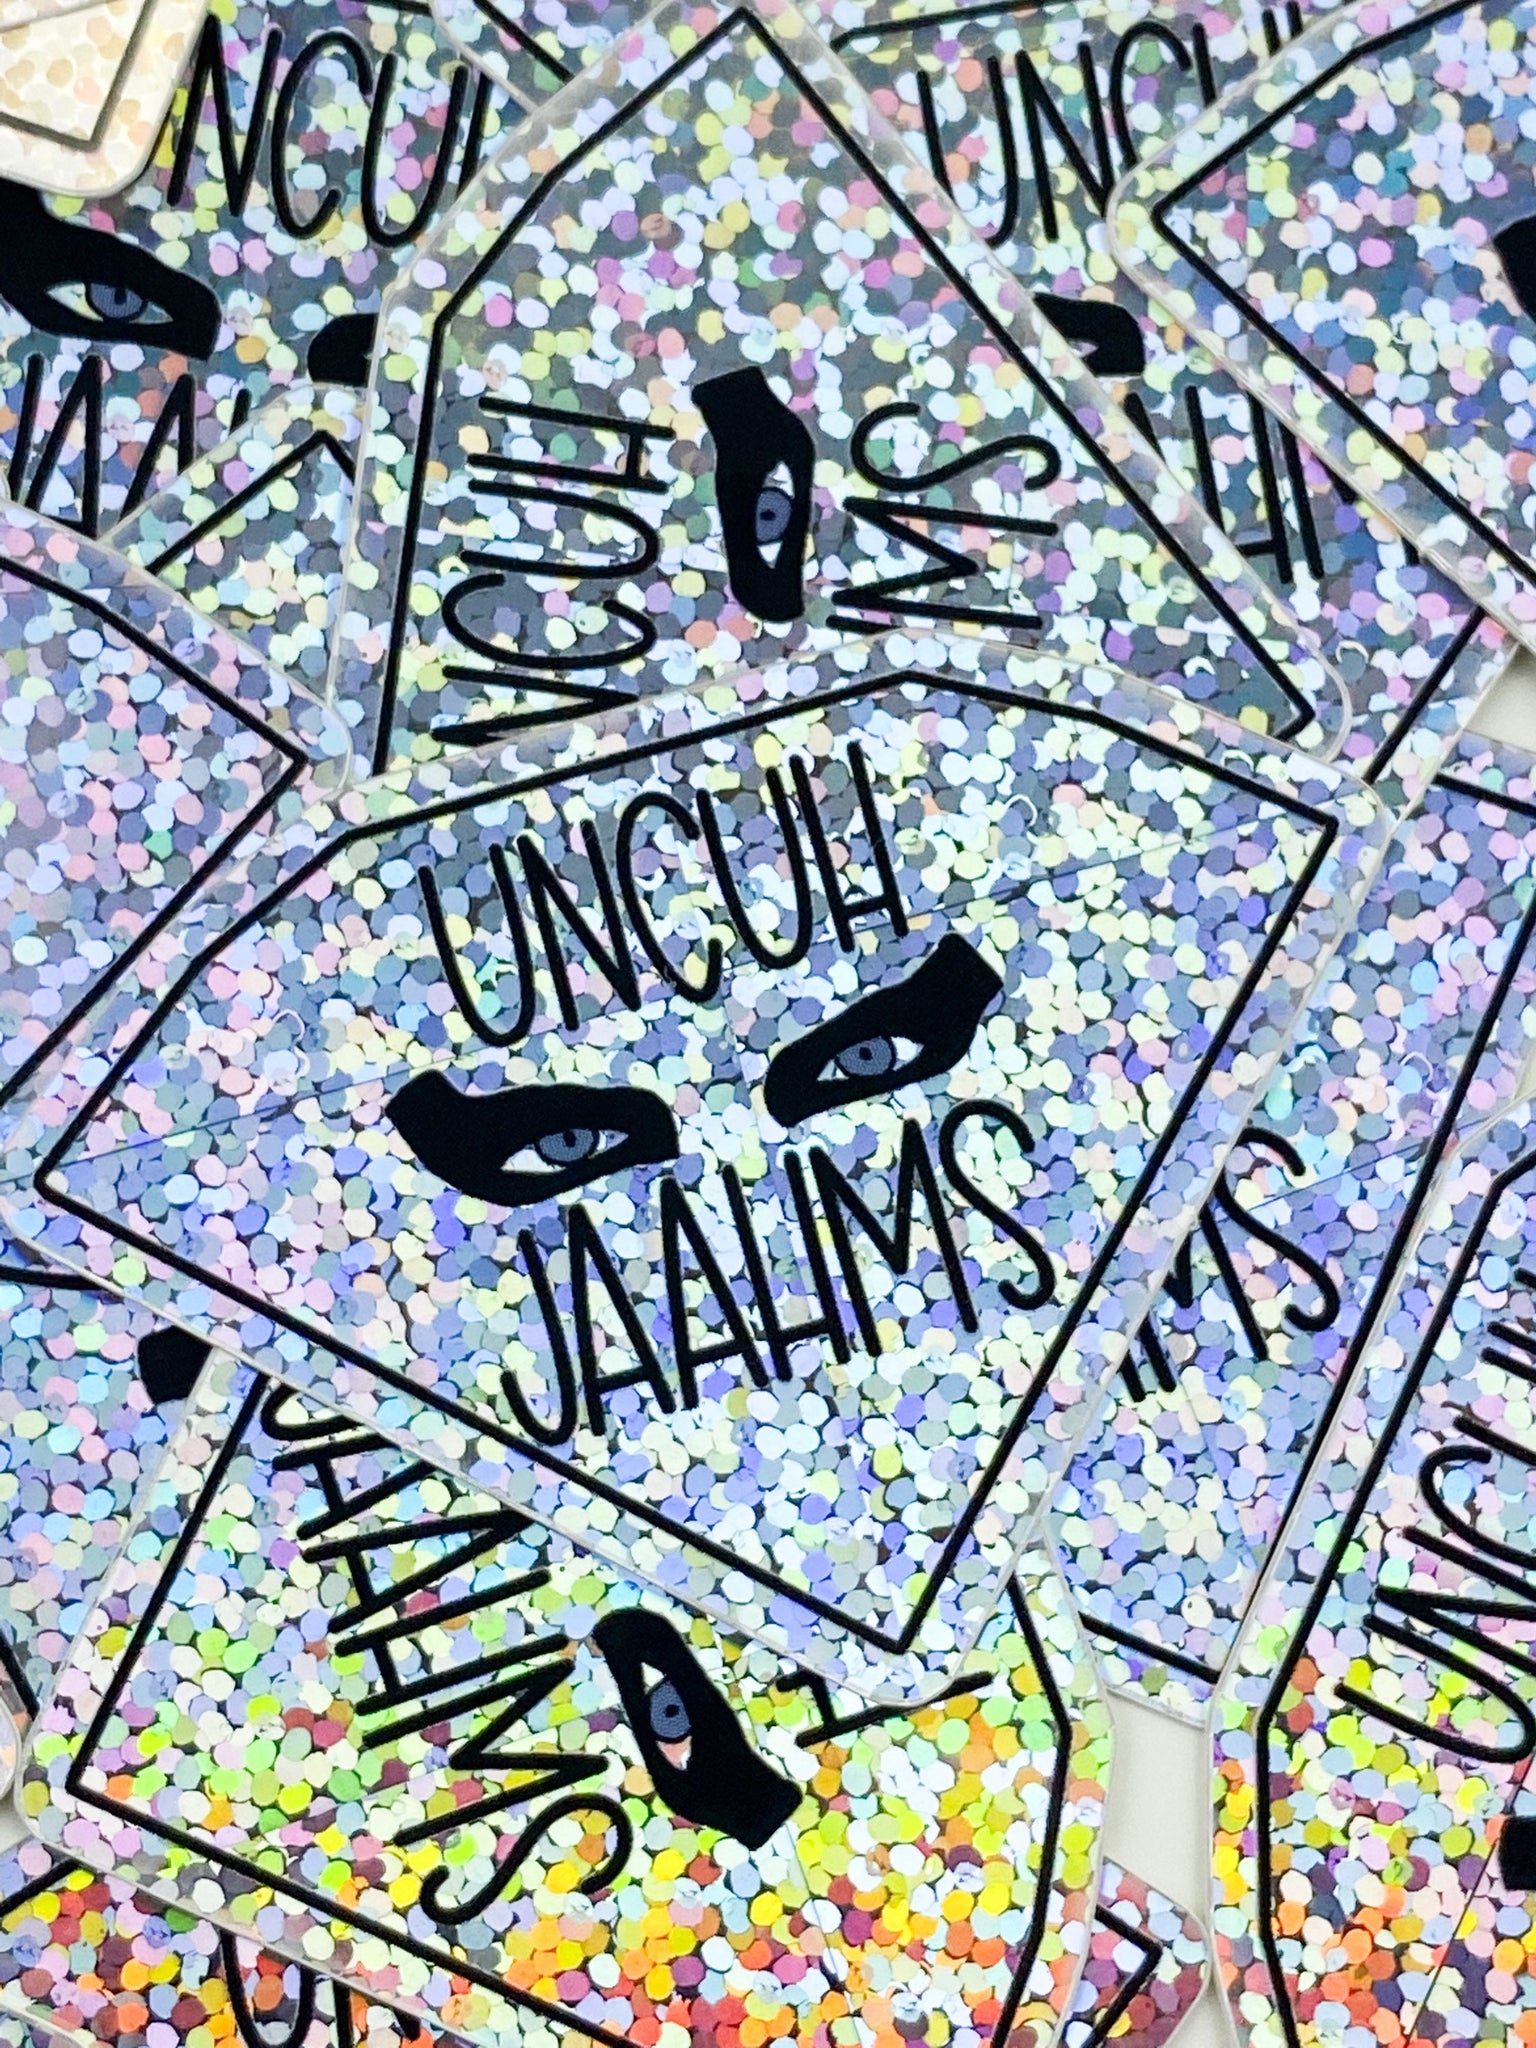 Uncuh Jaahms Glitter Vinyl Sticker